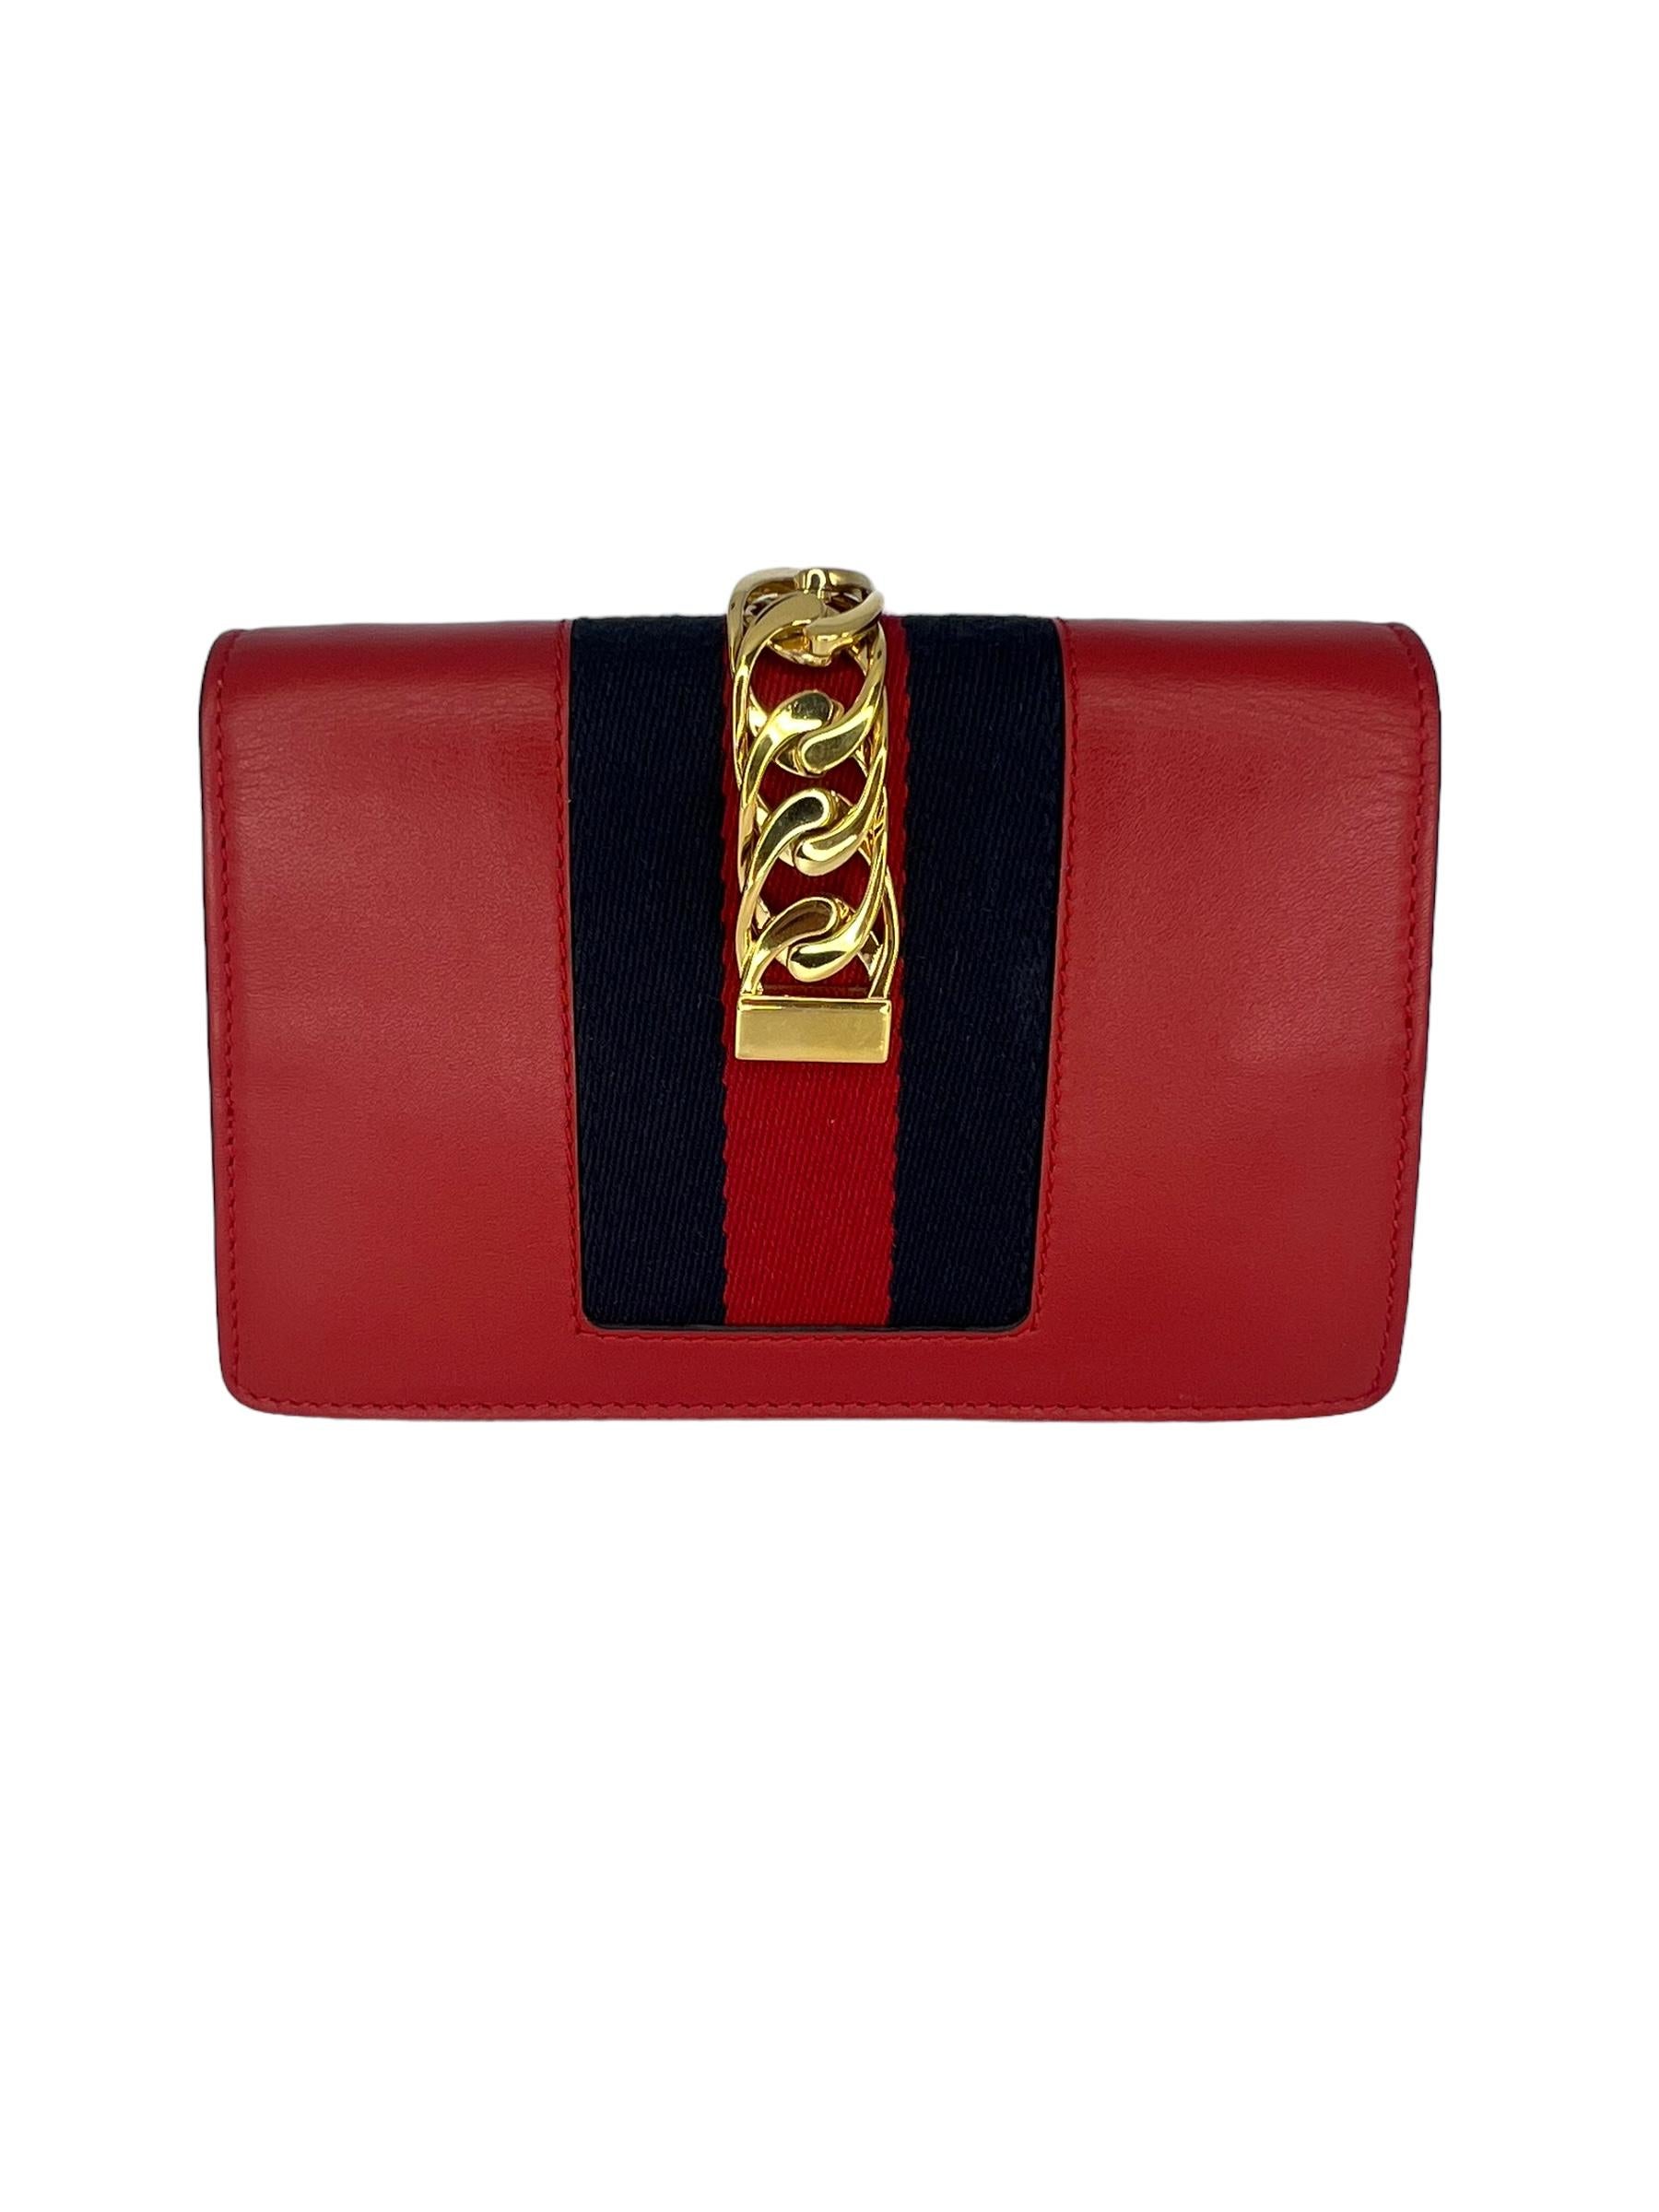 GUCCI Mini Sylvie Chain Shoulder Bag aus Kalbsleder in Hibiskusrot. Diese schicke, strukturierte Umhängetasche ist aus glattem Kalbsleder in Rot gefertigt und verfügt über einen goldenen Kettenriemen, eine auffällige Frontklappe mit einem roten und